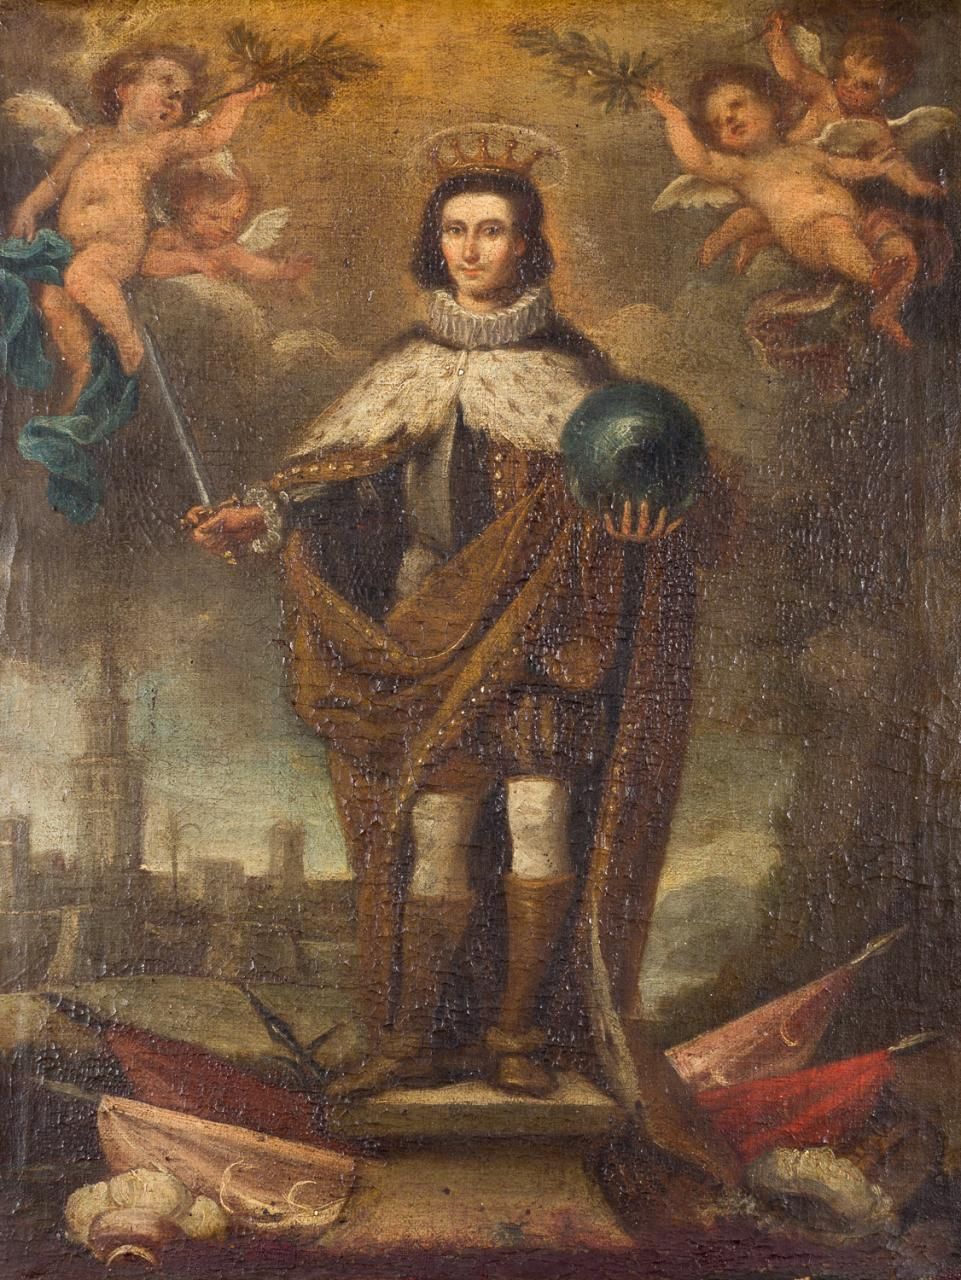 ESCUELA SEVILLANA, Fns. S. XVII Der Heilige Ferdinand
Öl auf Leinwand
48 x 37 cm